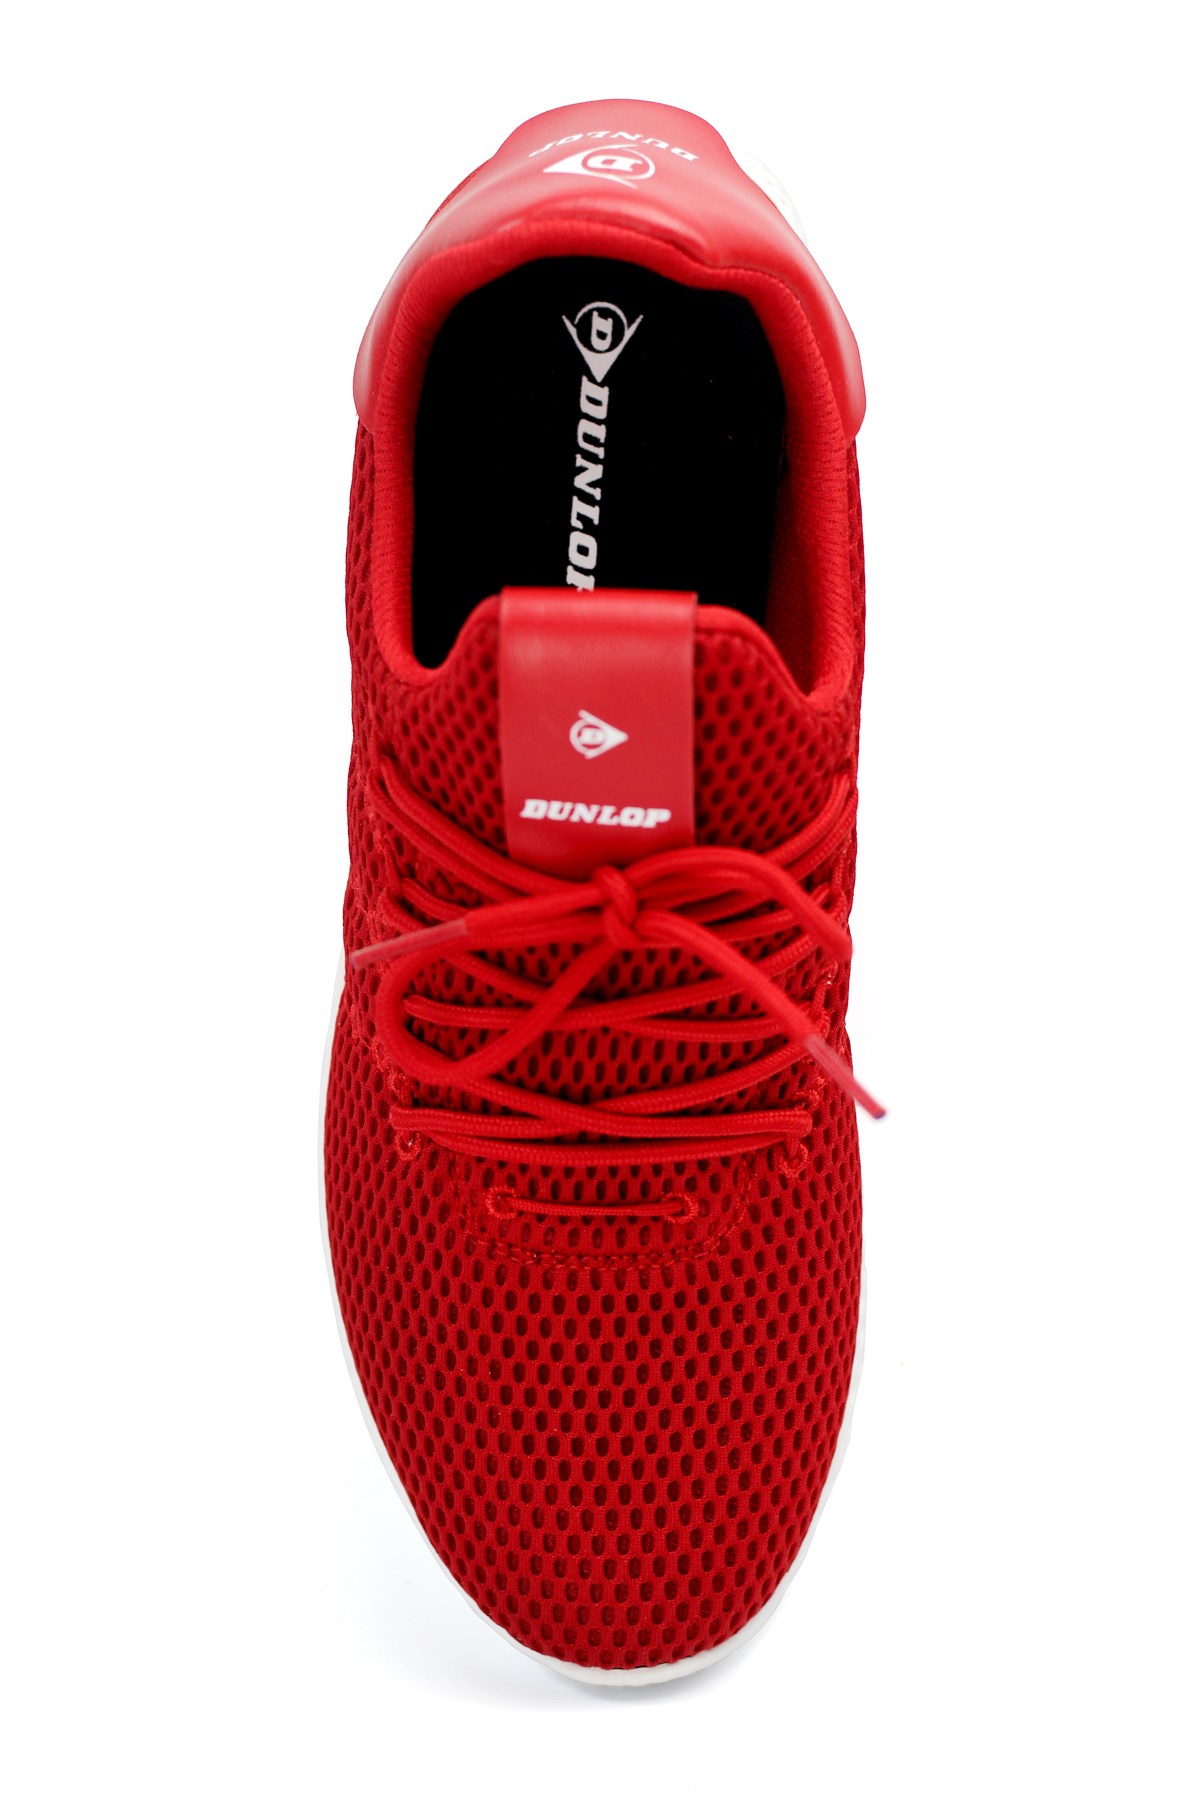 Dunlop Erkek Triko Bağcıklı Sneaker G42M114101-Kırmızı G42M114101-Kırmızı  239,90 TL Tüm ürünlerde %25 indirim